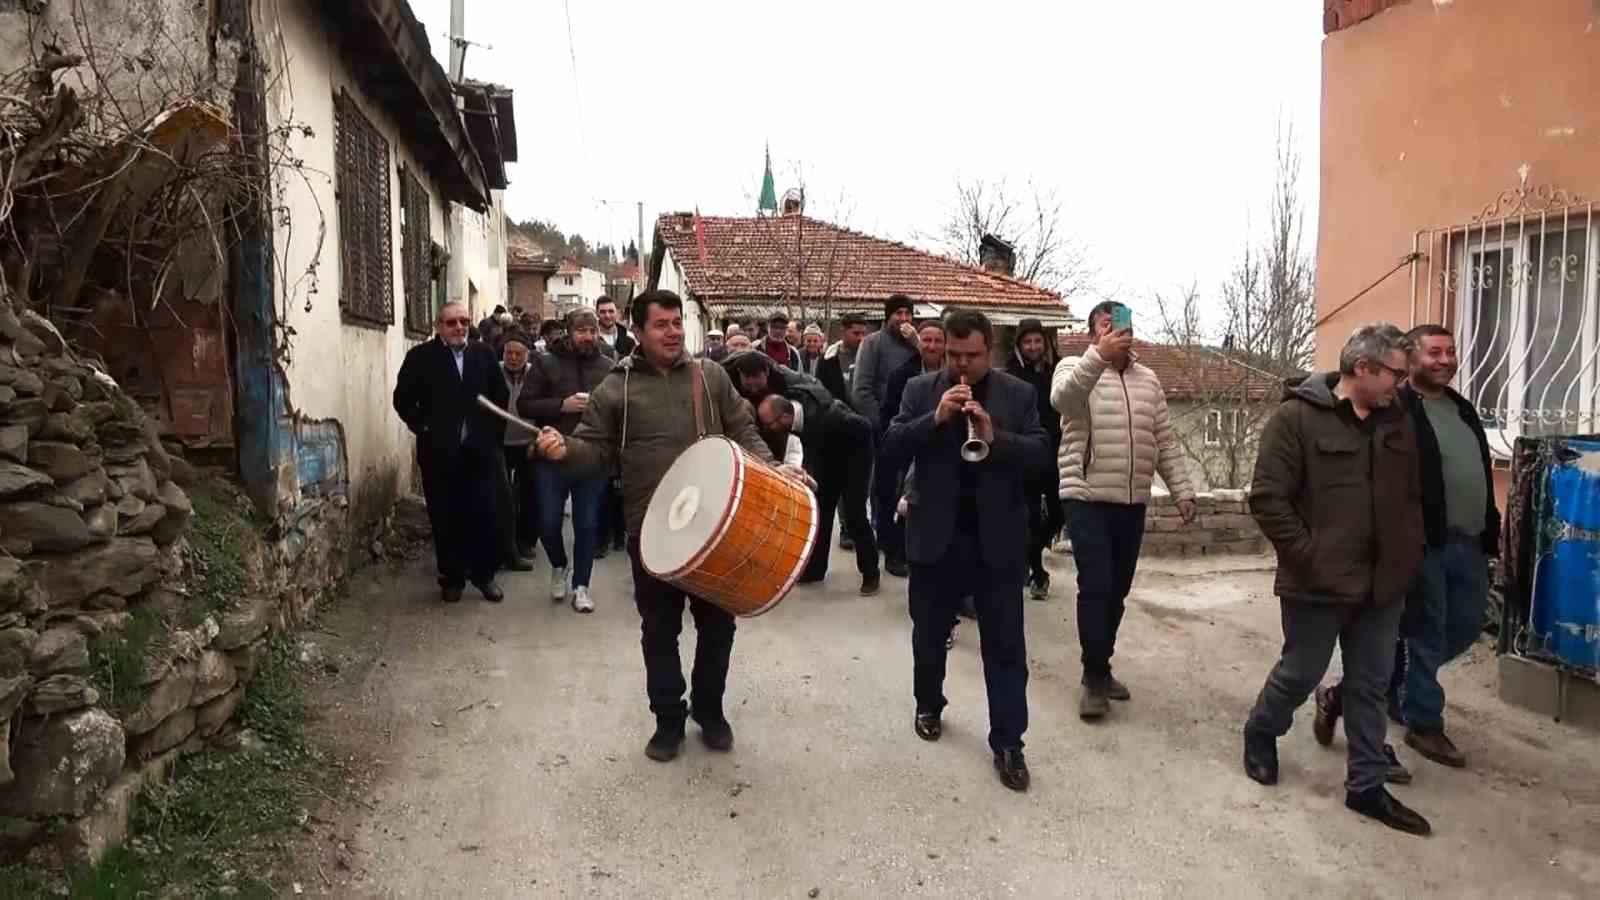 (Özel) Bursa’da mahkemenin mermer ocağı kararını duyan köylüler davul zurnayla yürüdü